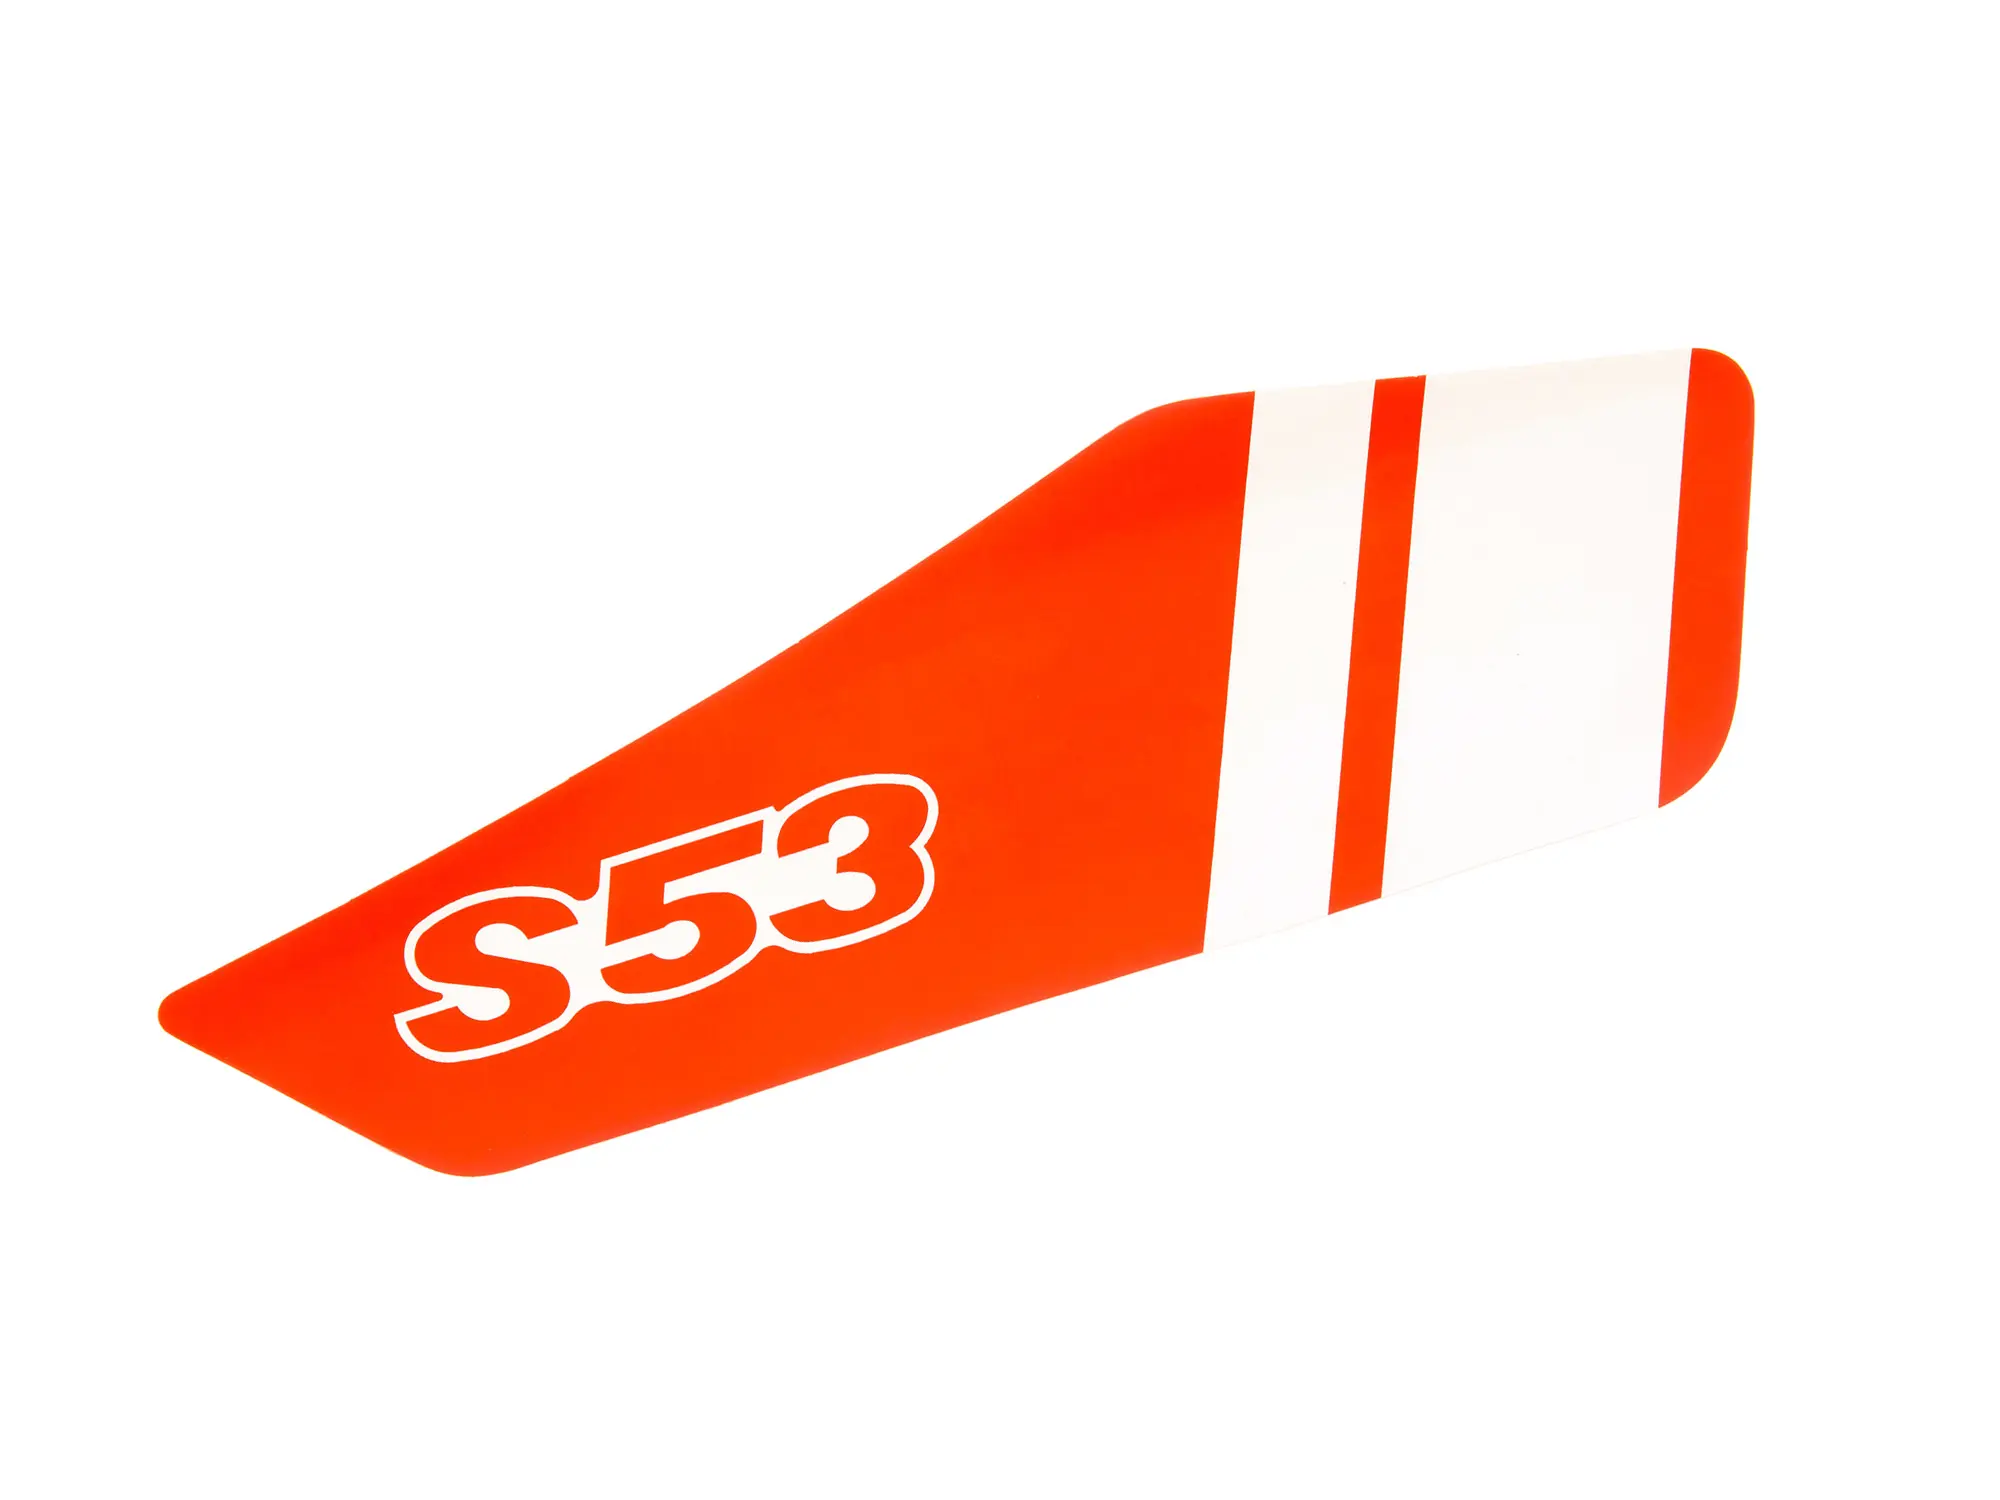 Klebefolie für Seitendeckel, rechts, Rot/Weiß - Simson S53, Art.-Nr.: 10068497 - Bild 1